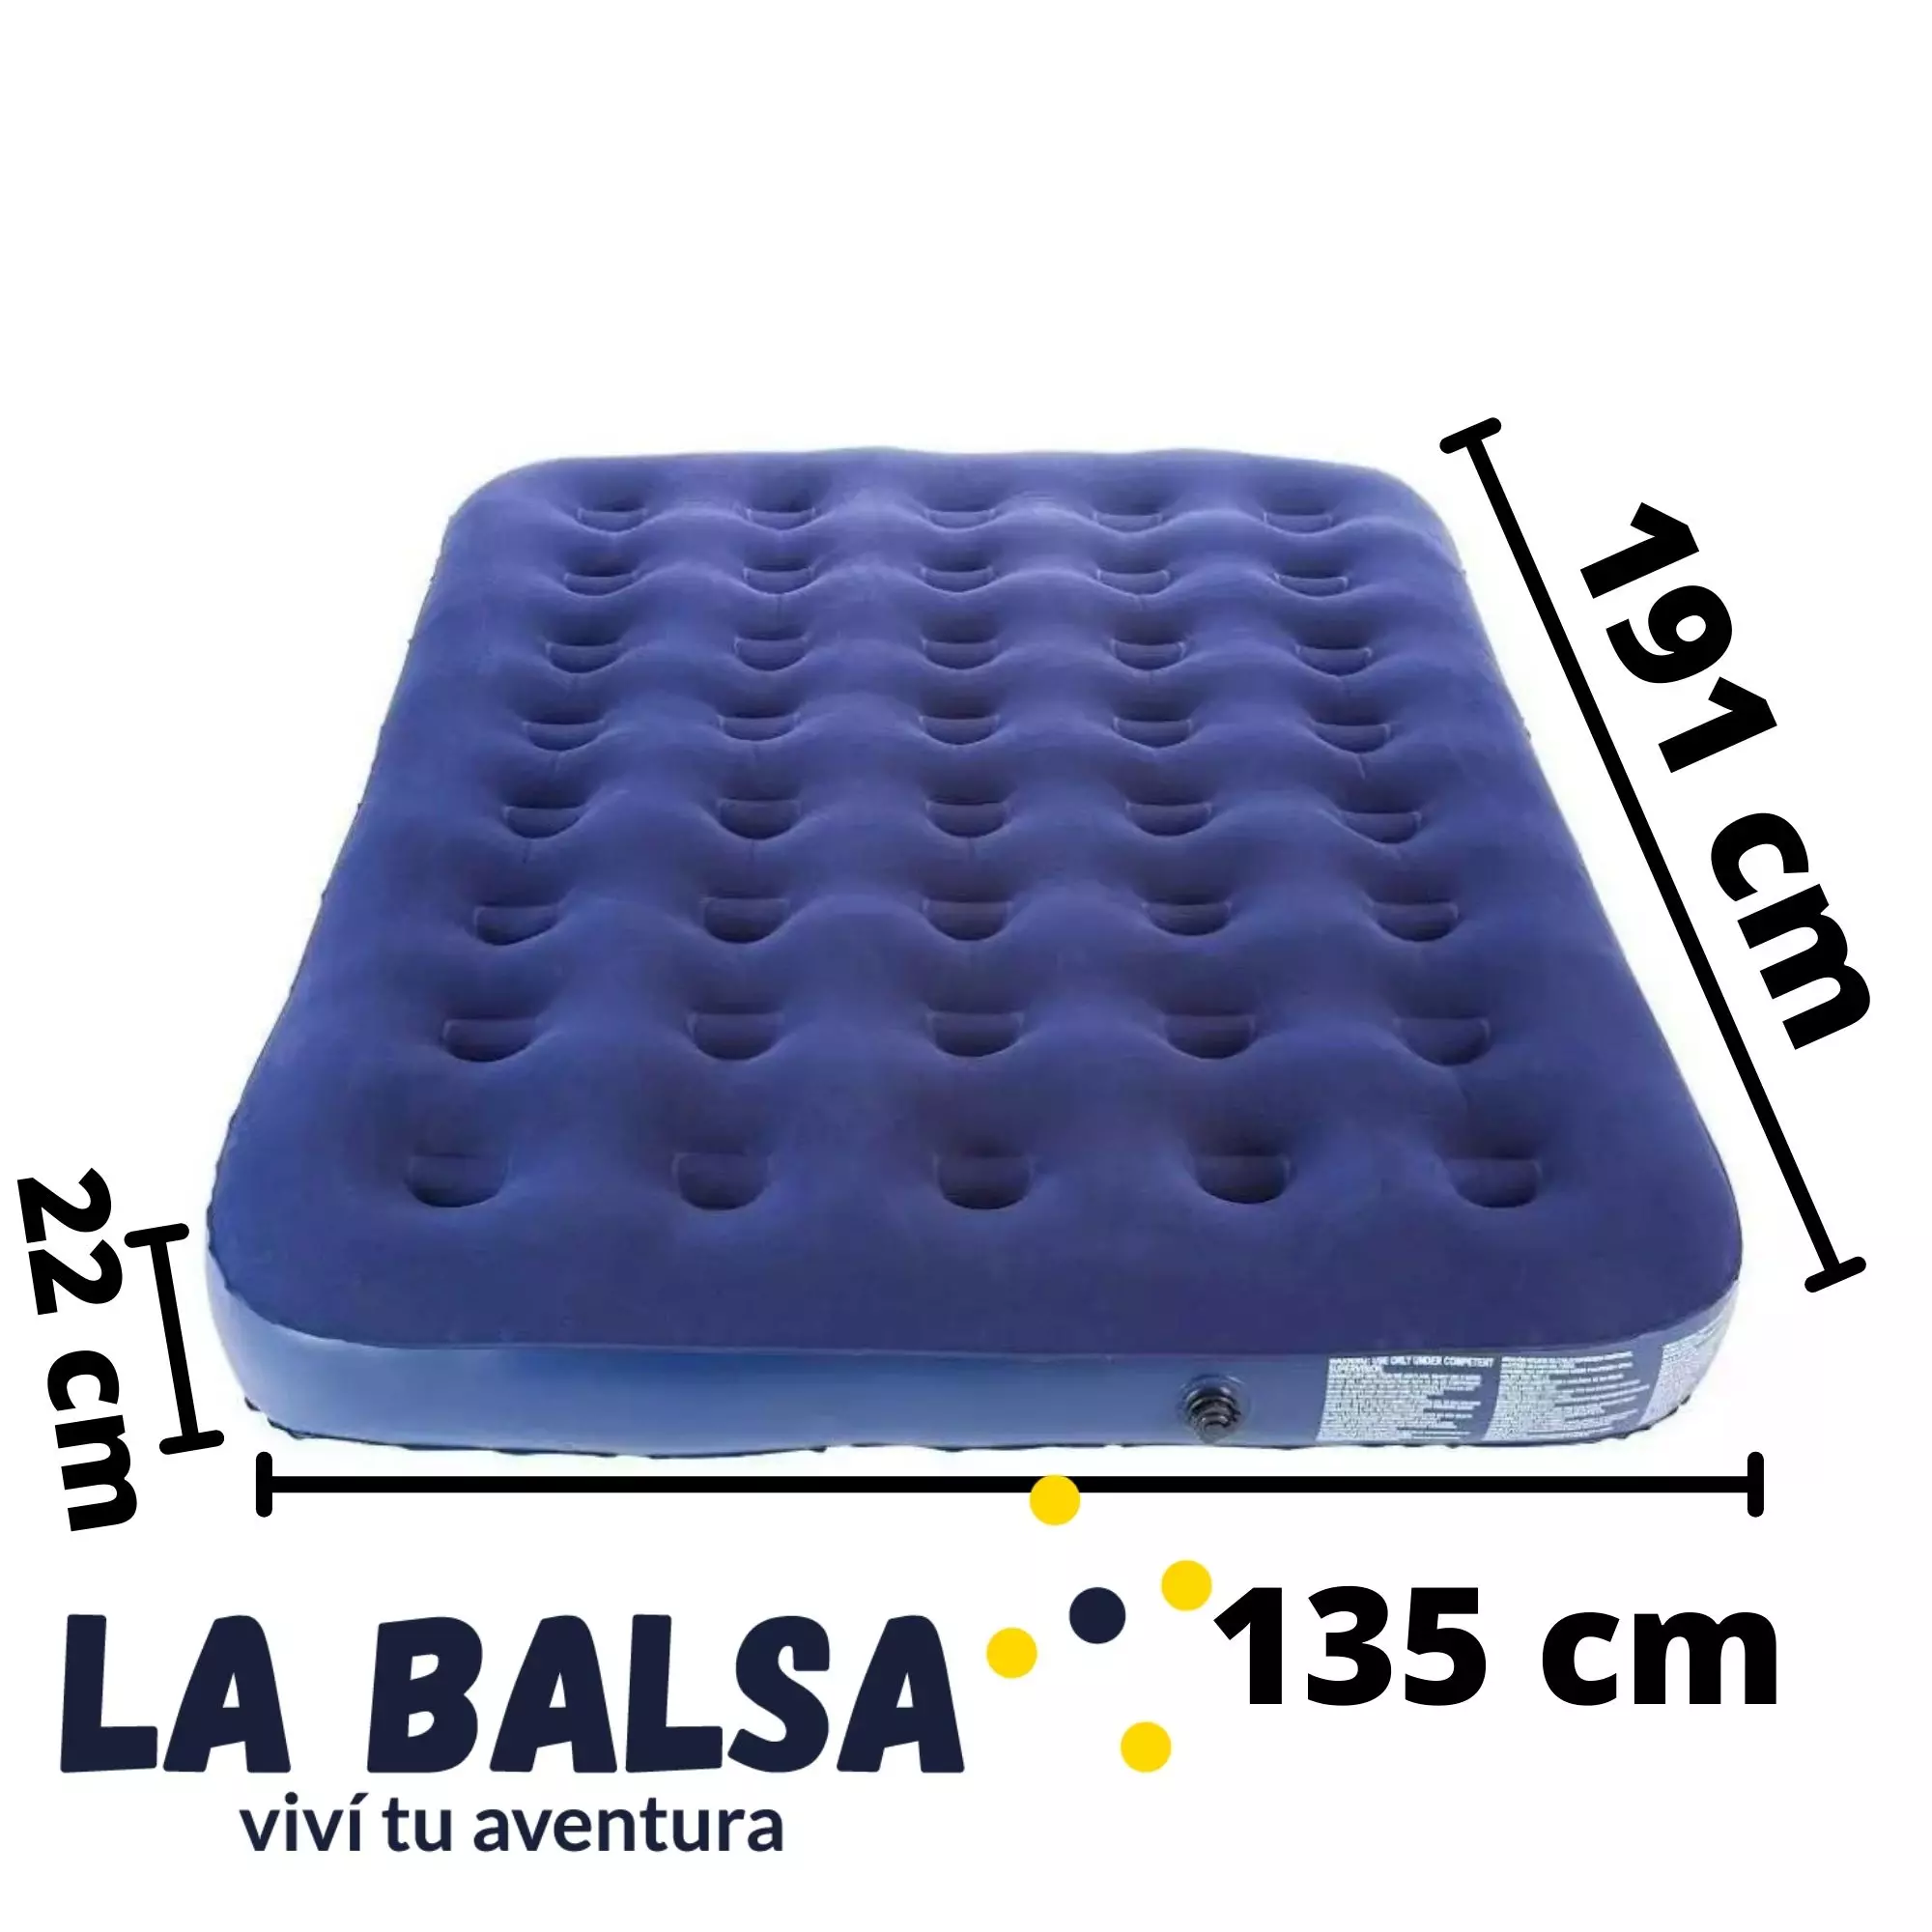 pulgar Mono Llamarada Colchon Inflable Colony (2 plazas) - La Balsa